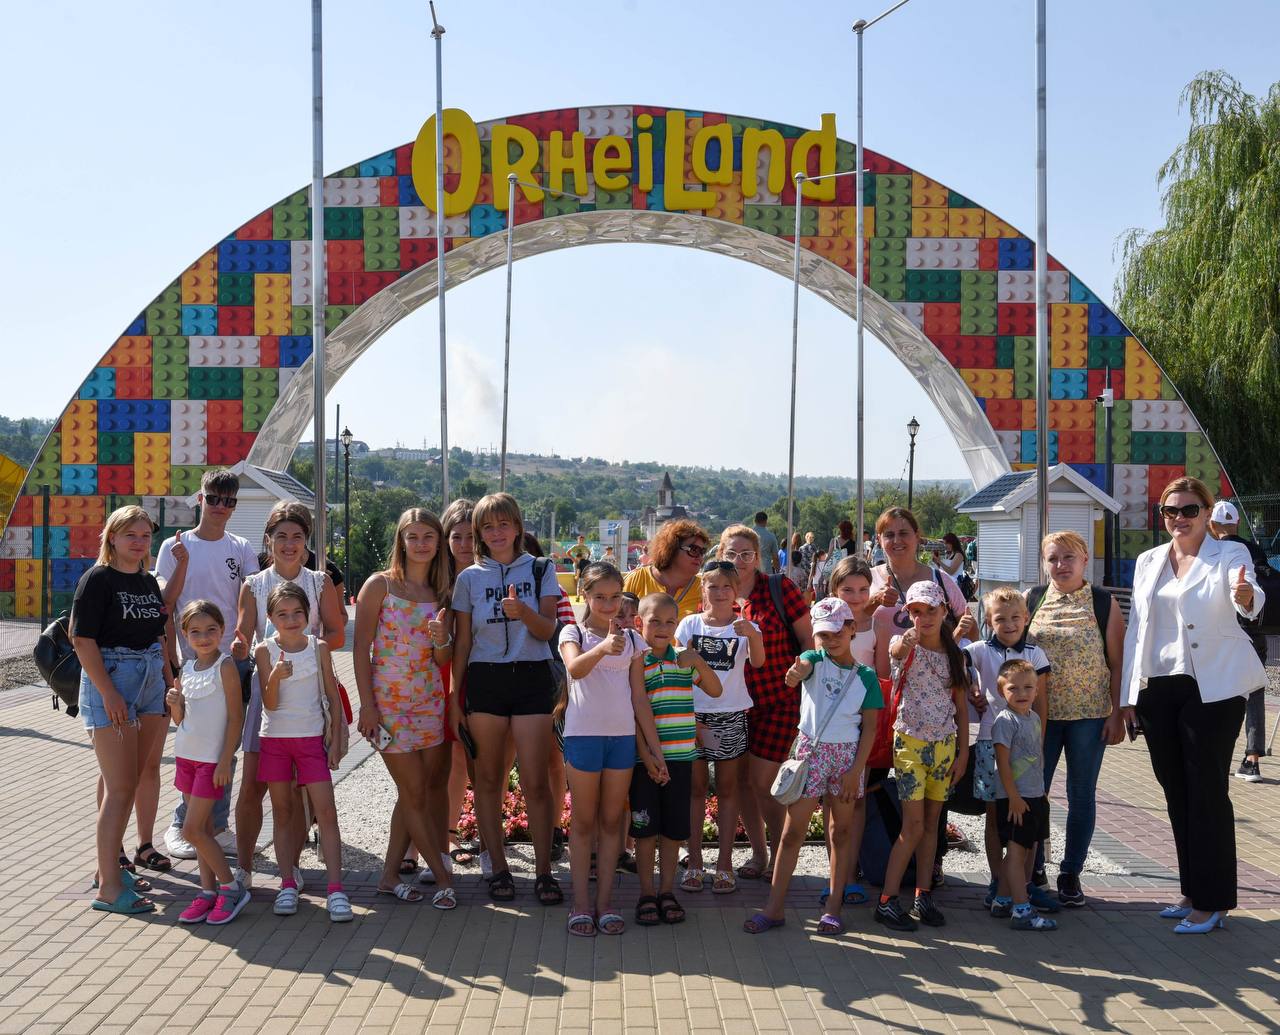 Veste bună pentru copii și părinți: Excursiile gratuite la OrheiLand continuă și în septembrie.